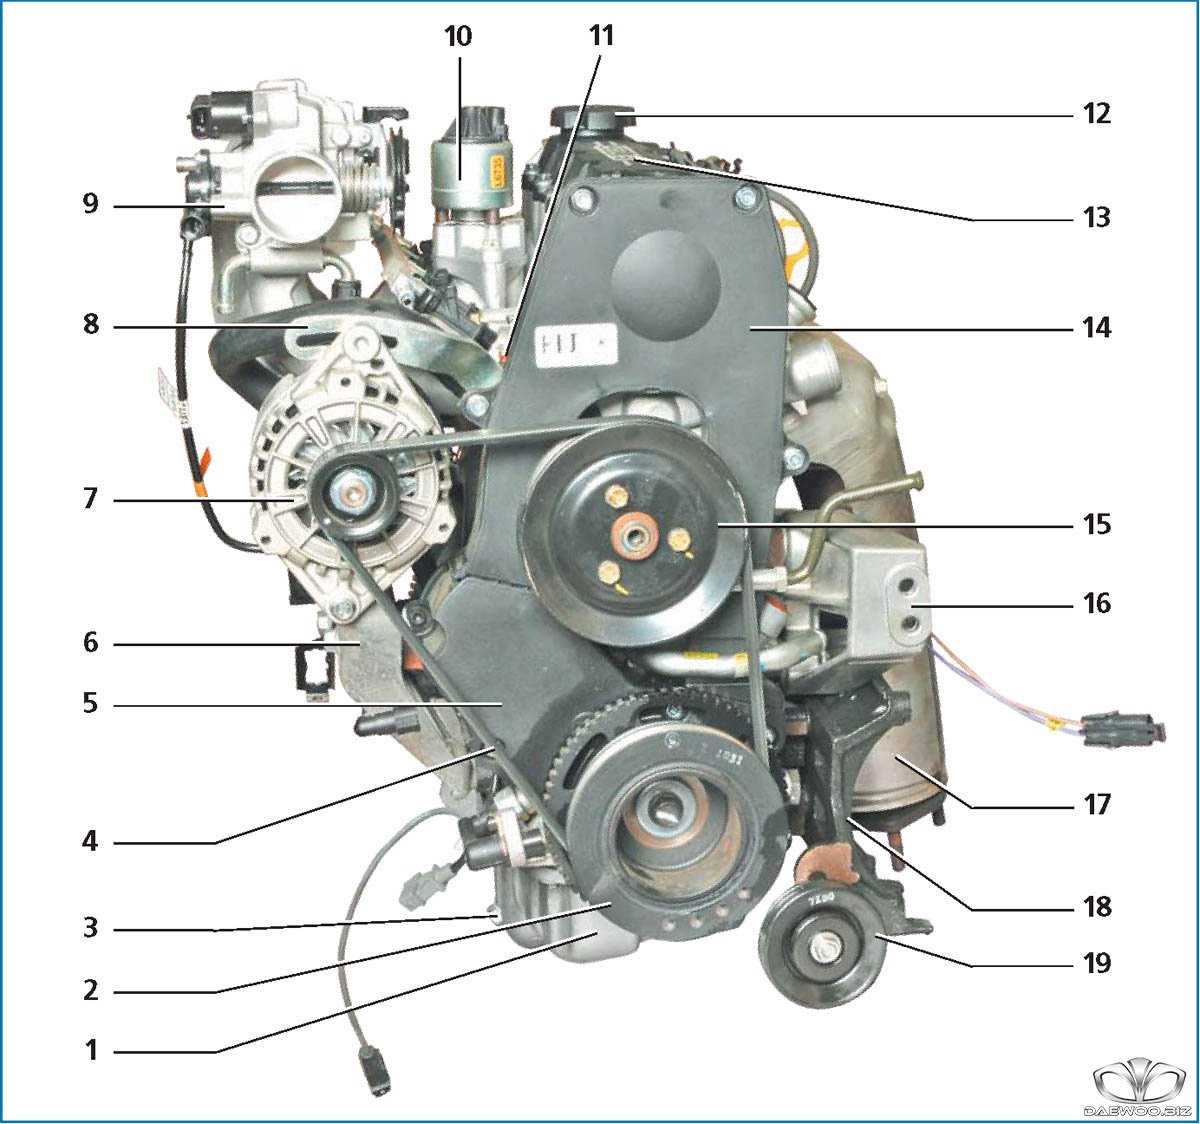 Сколько ремней в двигателе. Двигатель a15sms Шевроле Ланос. Двигатель а15sms Нексия. Daewoo Nexia мотор a15sms. Двигатель Daewoo Nexia 1.5 16 клапанов.